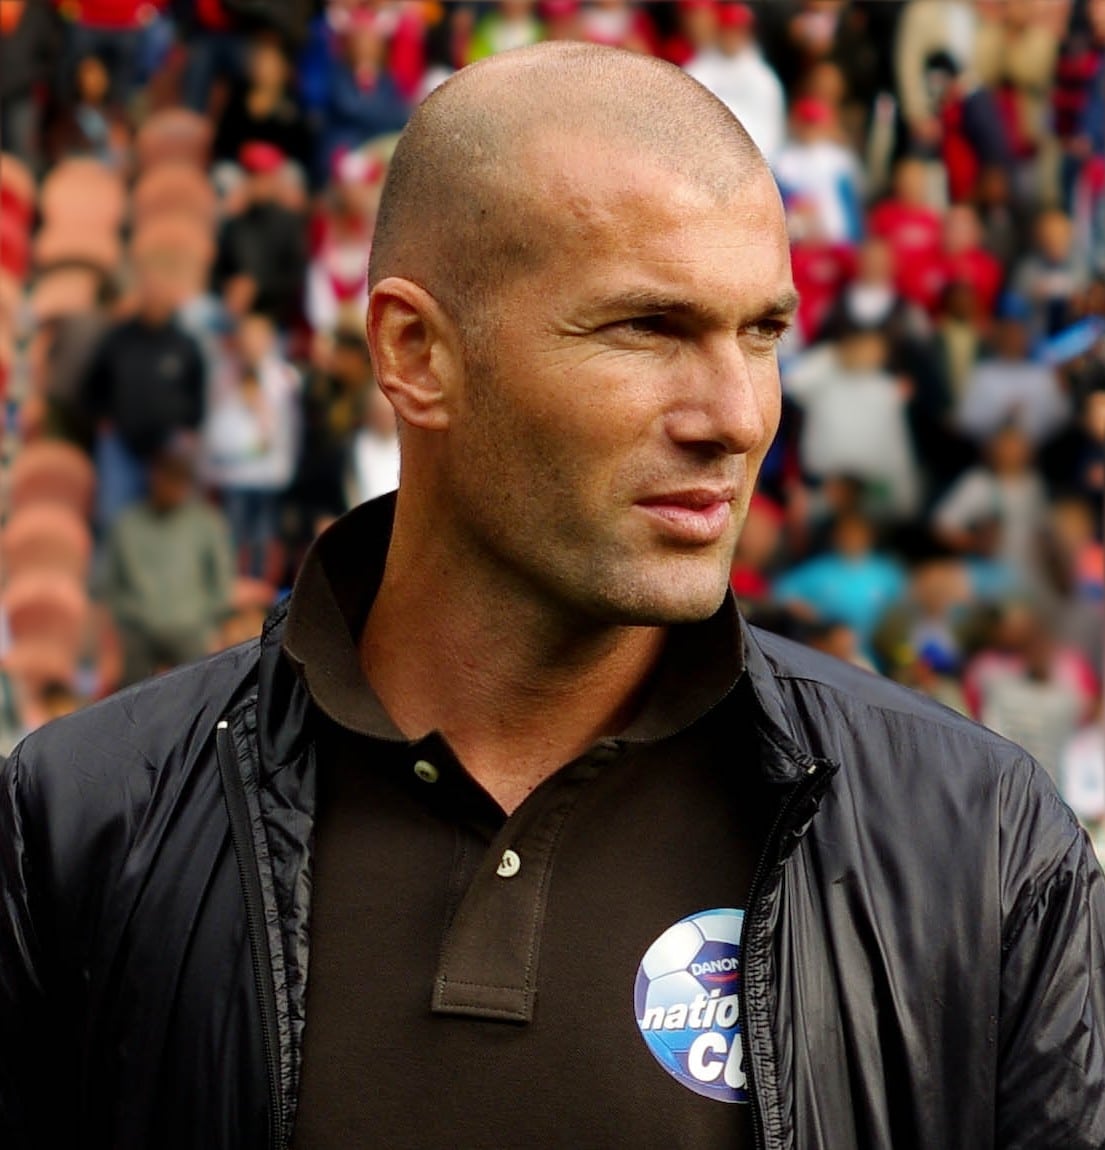 Souhaitez-vous entrer en contact avec Zinedine Zidane ?
 - Contacter ZINEDINE ZIDANE | Écrire à #ZinedineZidane